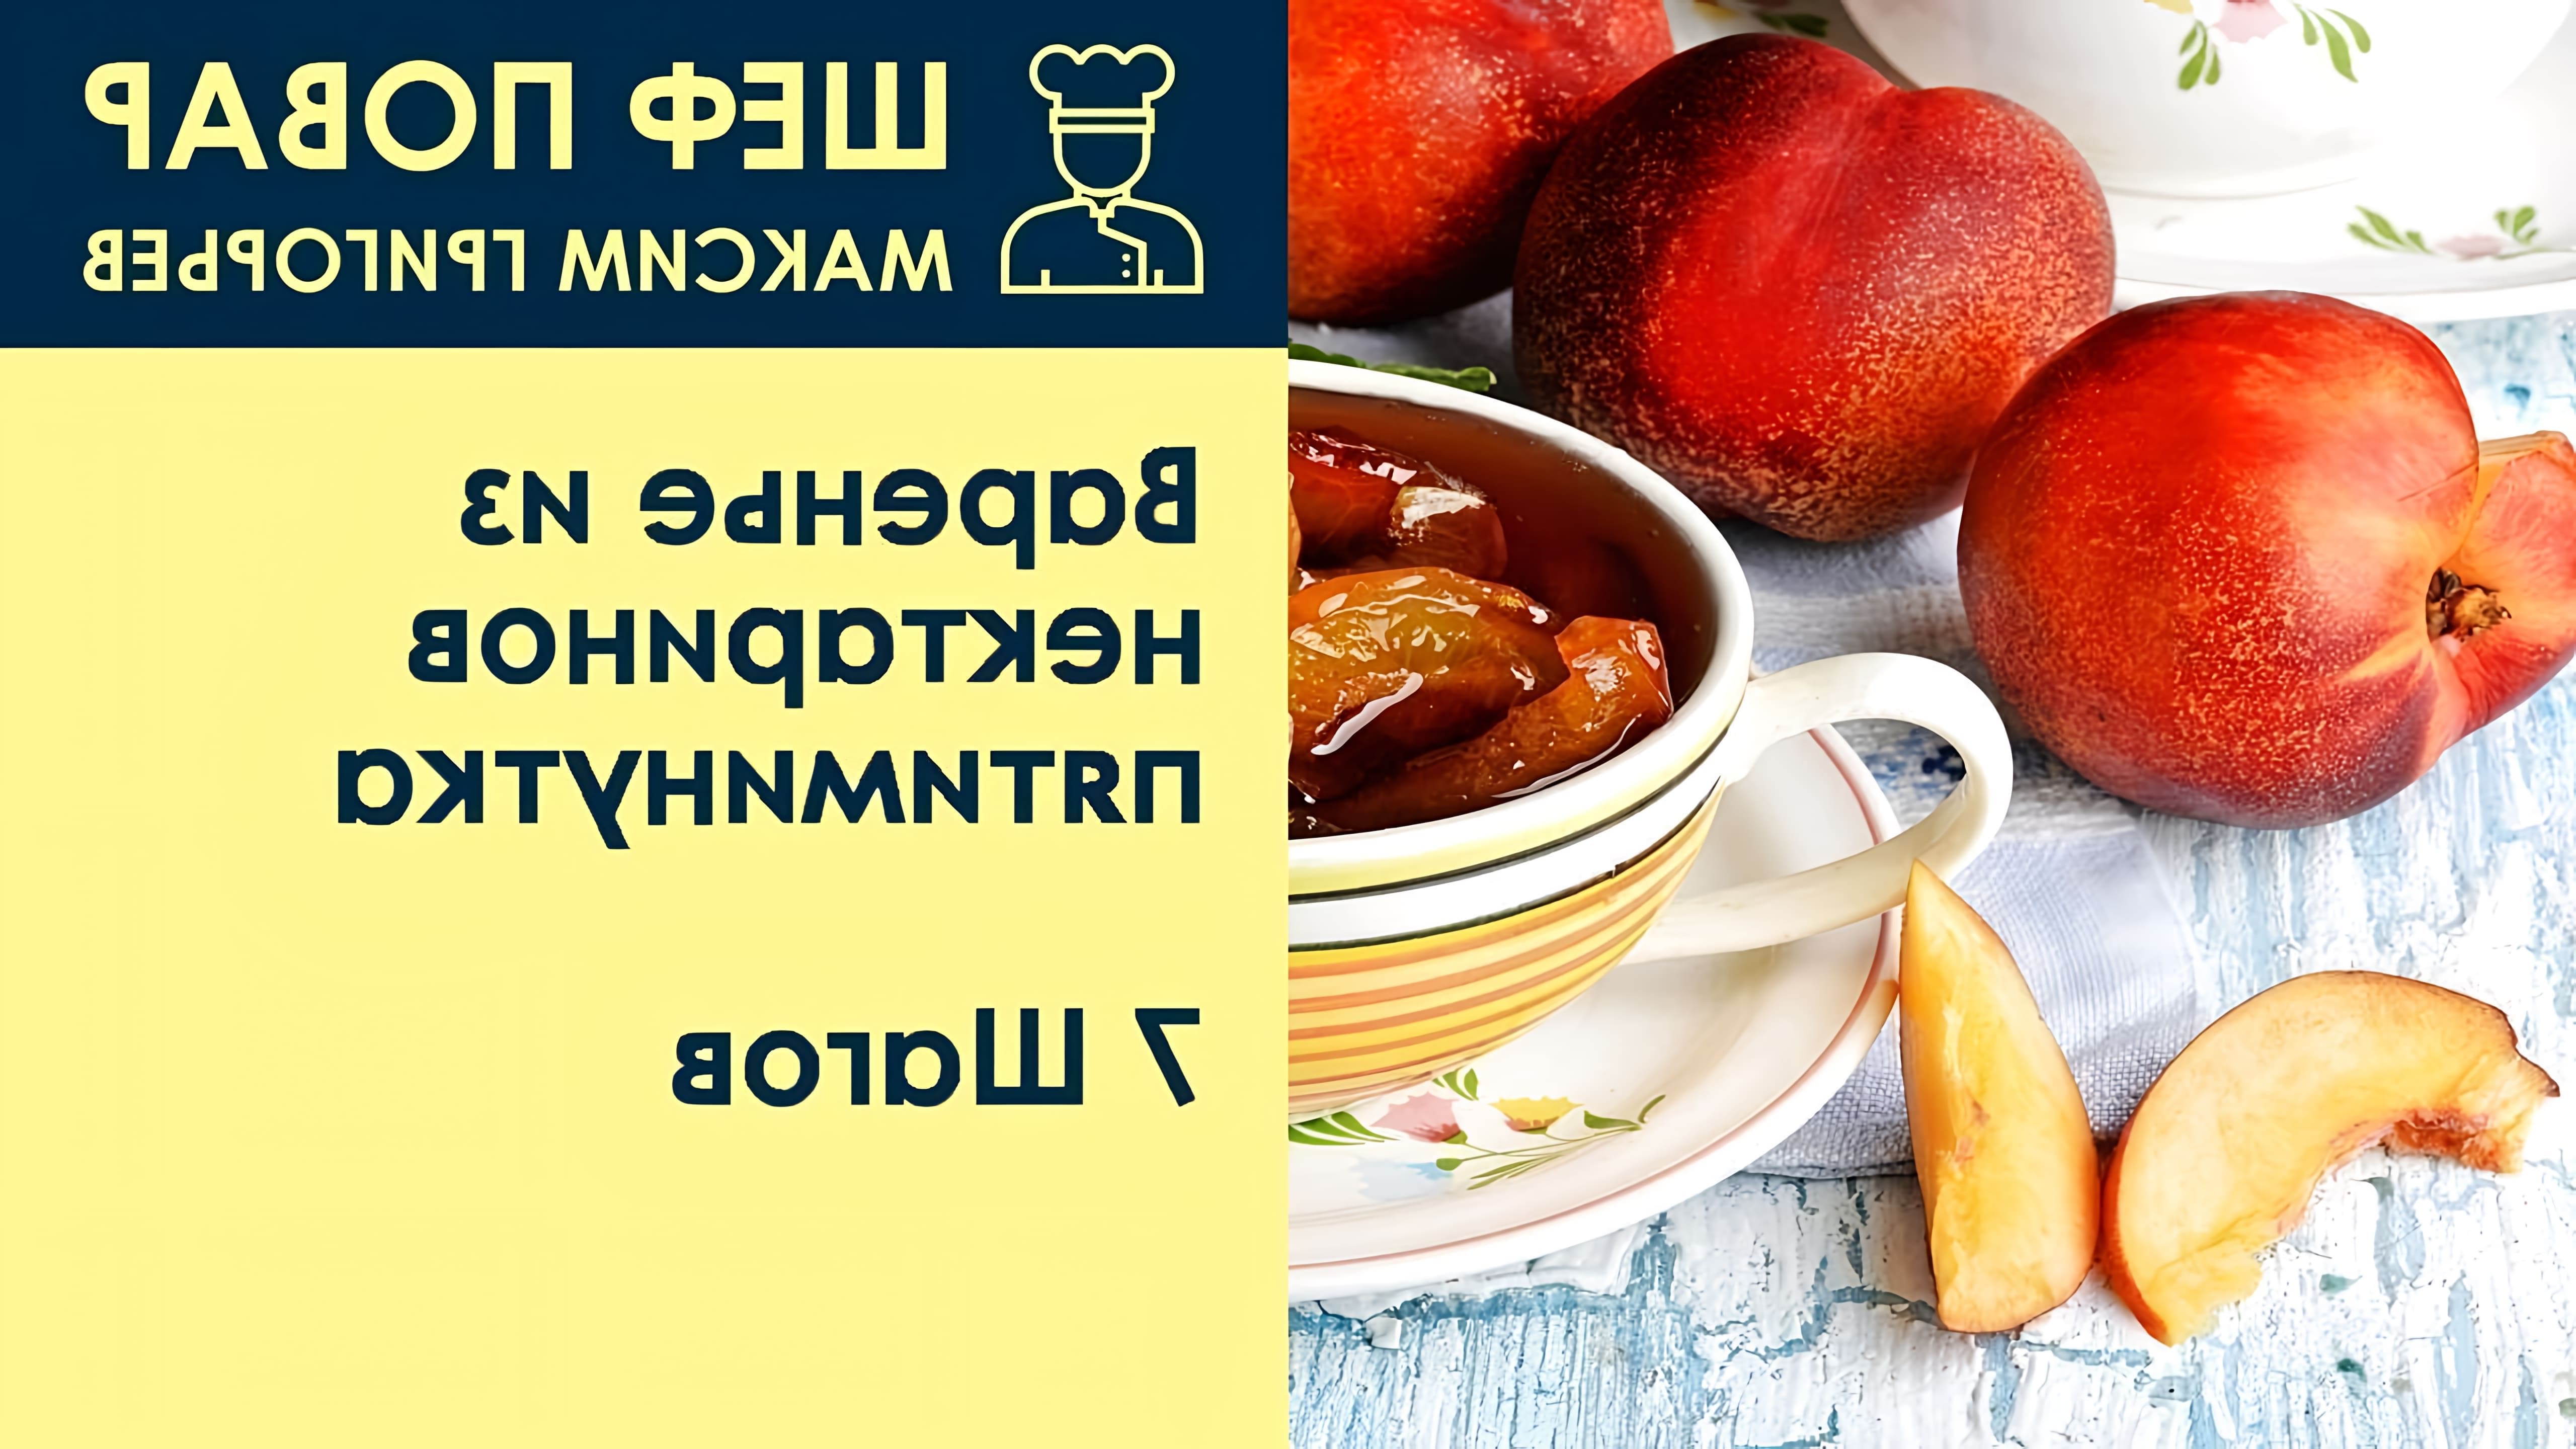 В данном видео шеф-повар Максим Григорьев демонстрирует рецепт приготовления варенья из нектаринов "пятиминутка"